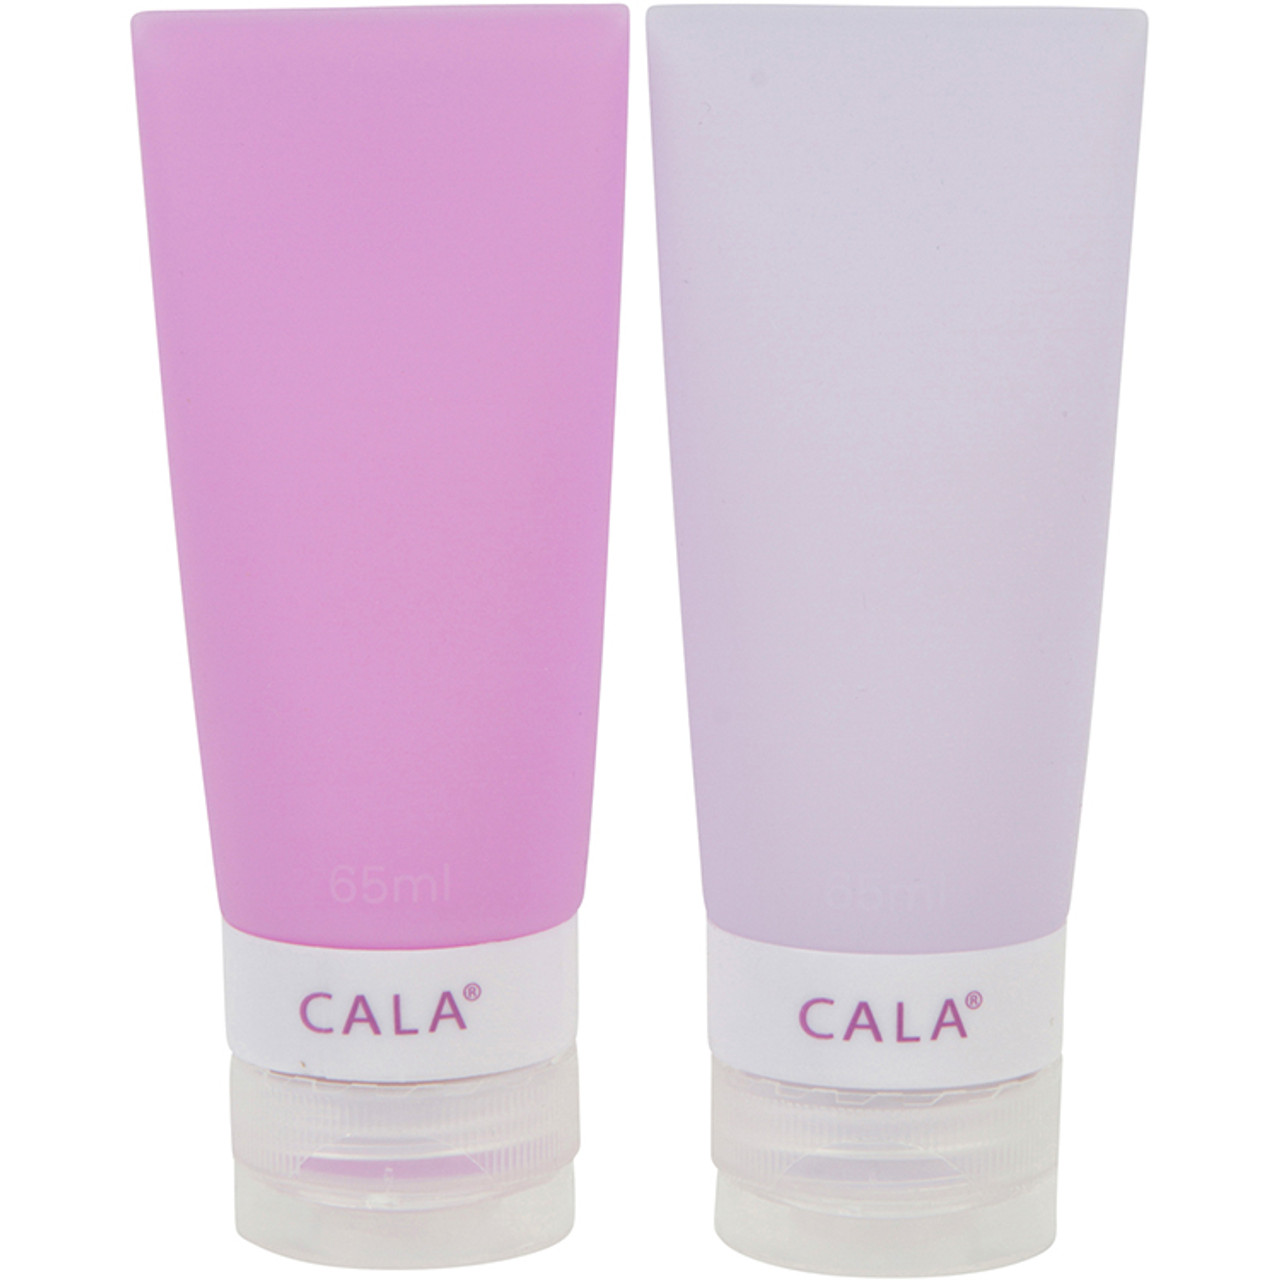 CALA® Leak Proof Travel Bottles